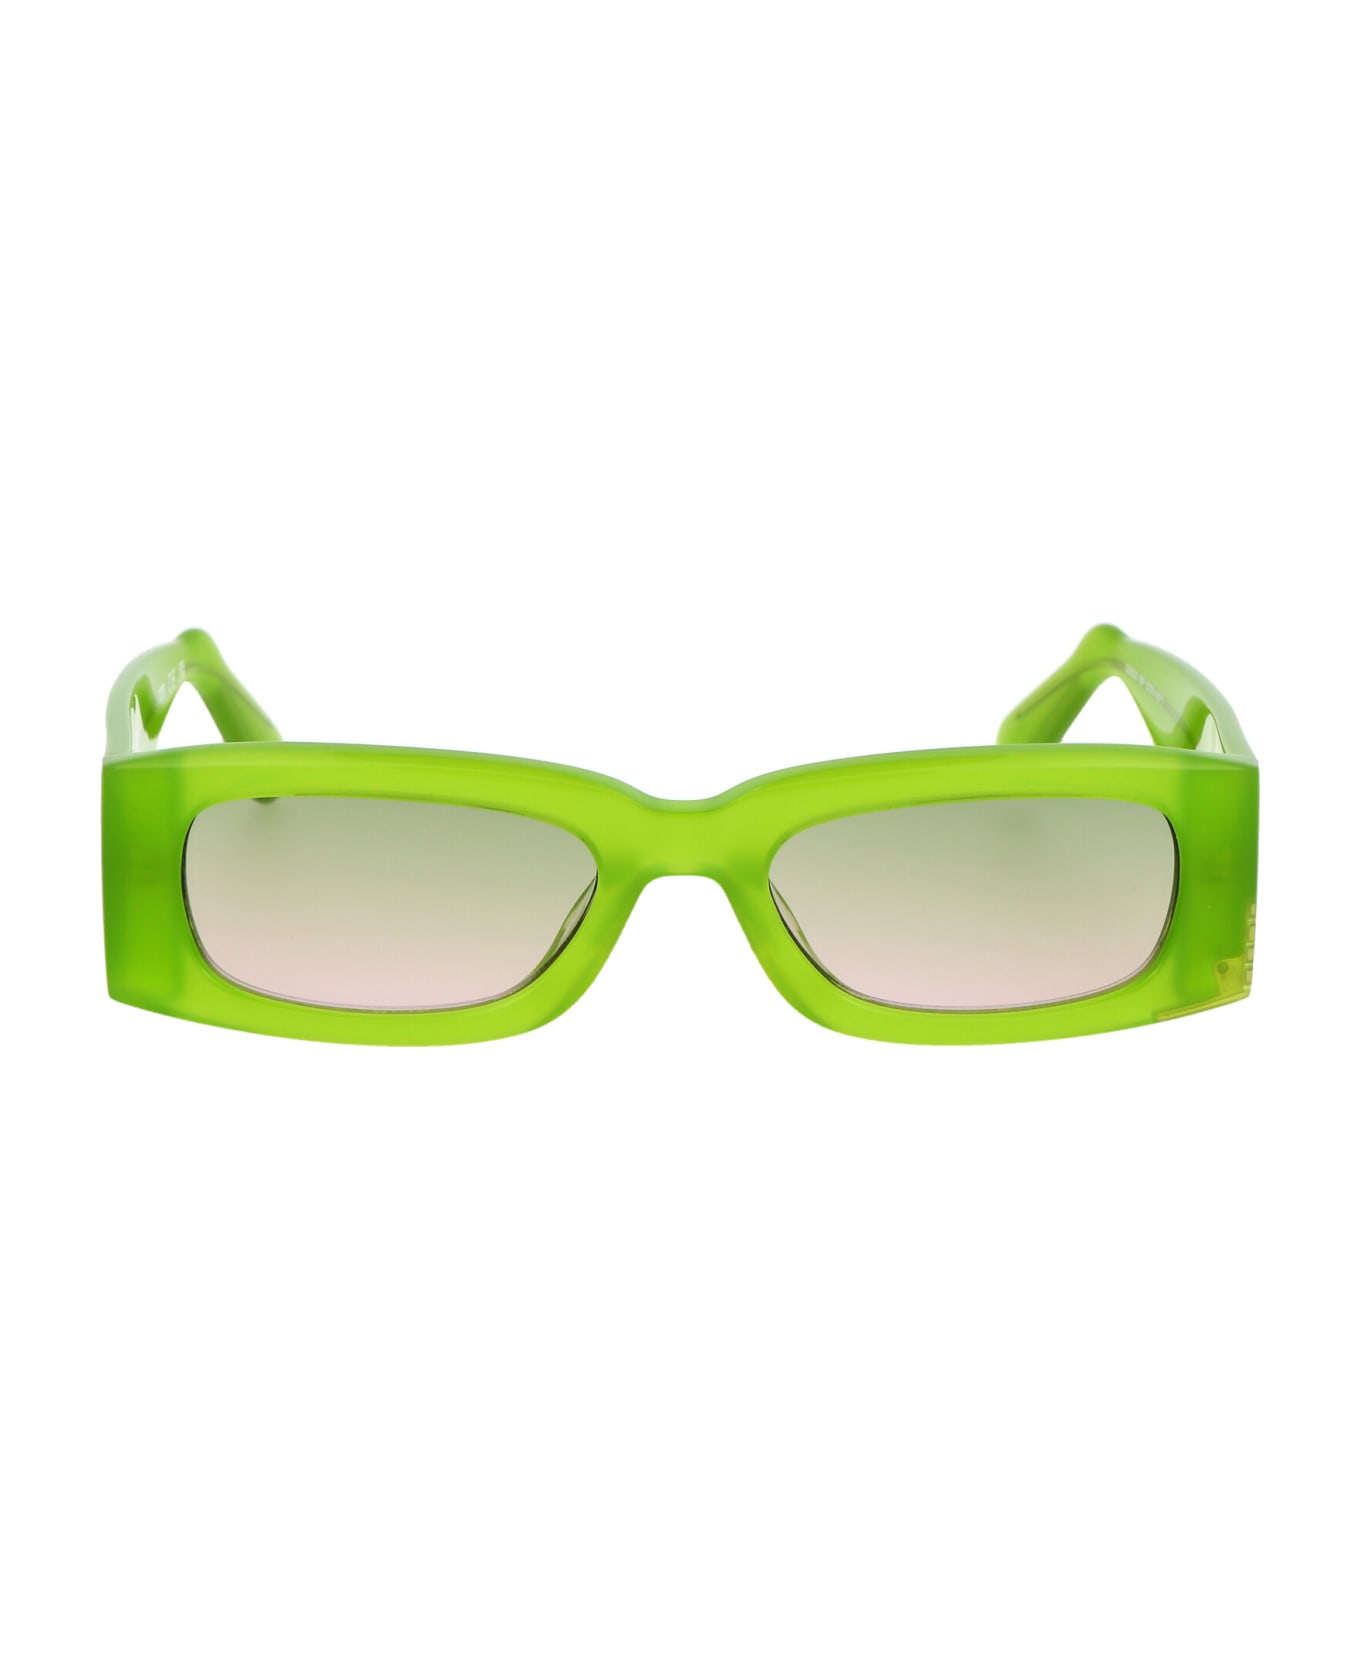 GCDS Gd0020 Sunglasses - 93P Verde Chiaro Luc/Verde Grad